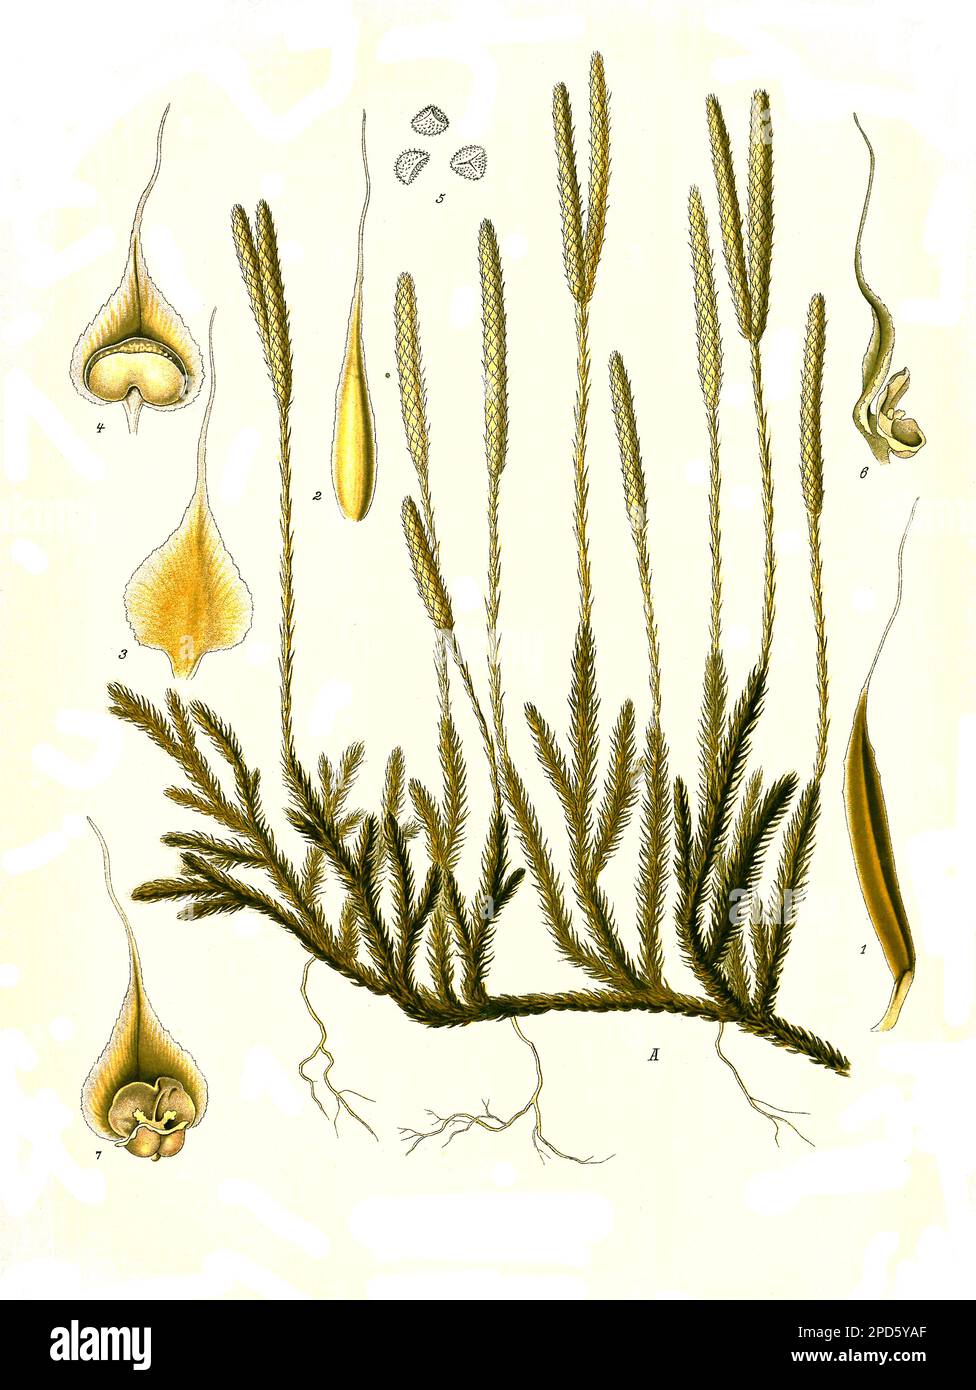 Heilpflanze, Keulen-Bärlapp, Lycopodium clavatum, auch Wolfsklaue, Historisch, digital restaurierte Reproduktion von einer Vorlage aus dem 19. Jahrhundert, Stock Photo